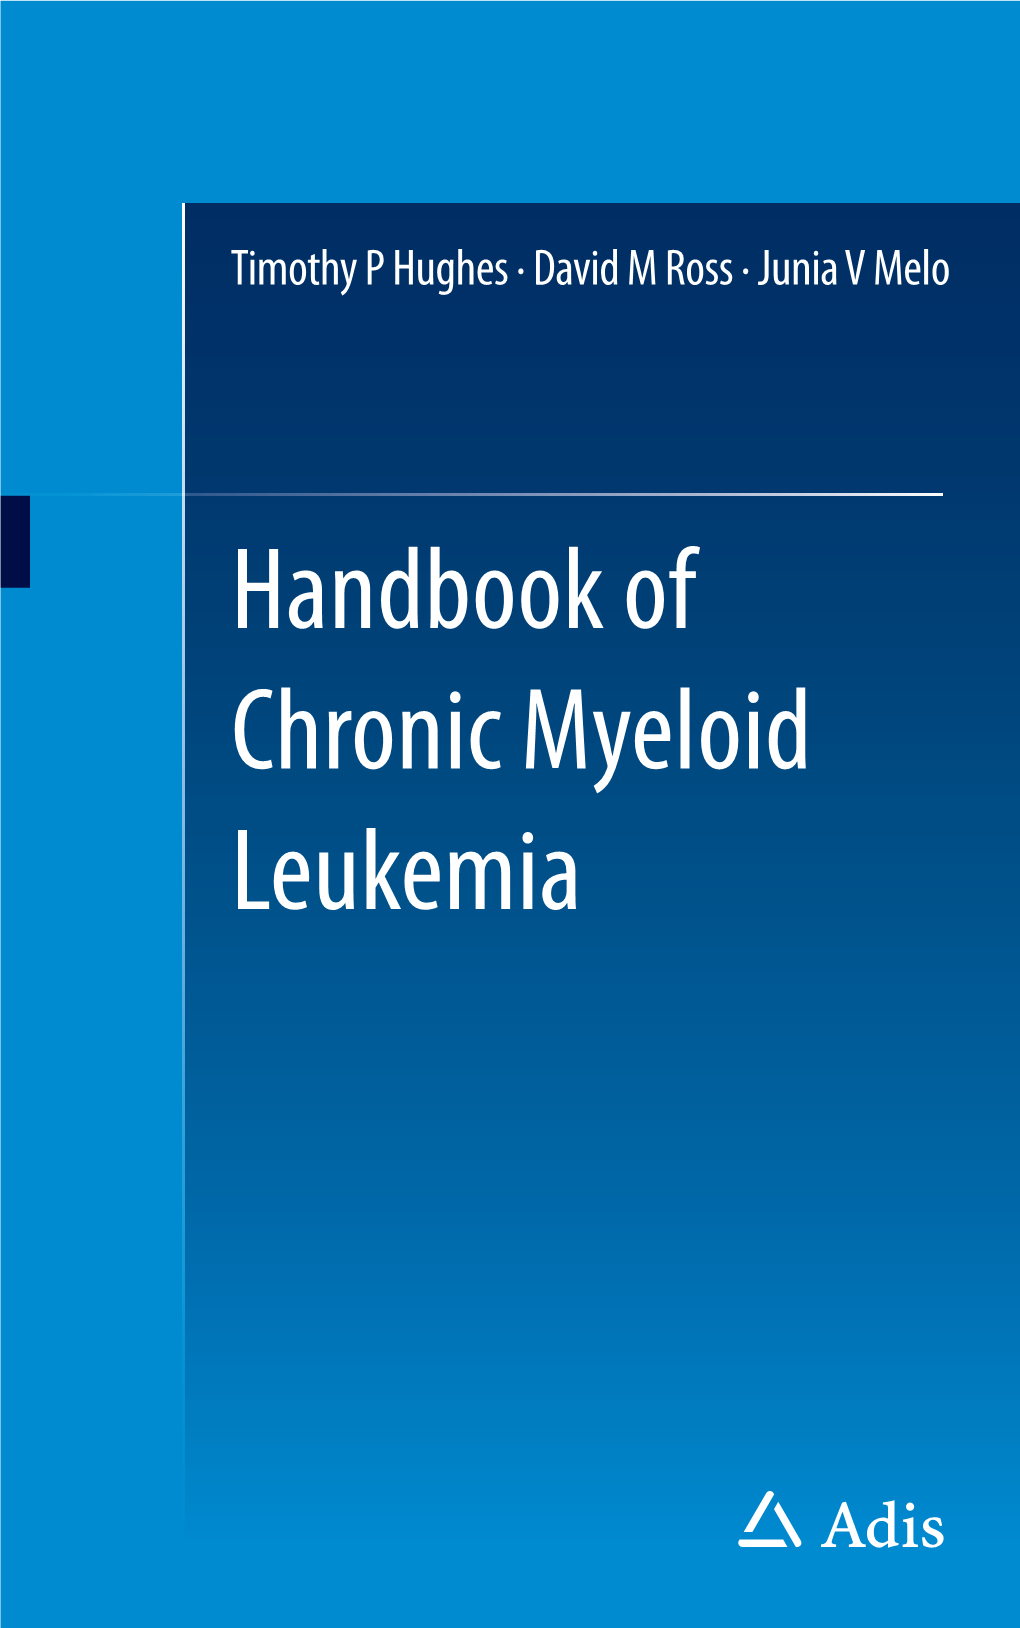 CML Handbook of Chronic Myeloid Leukemia